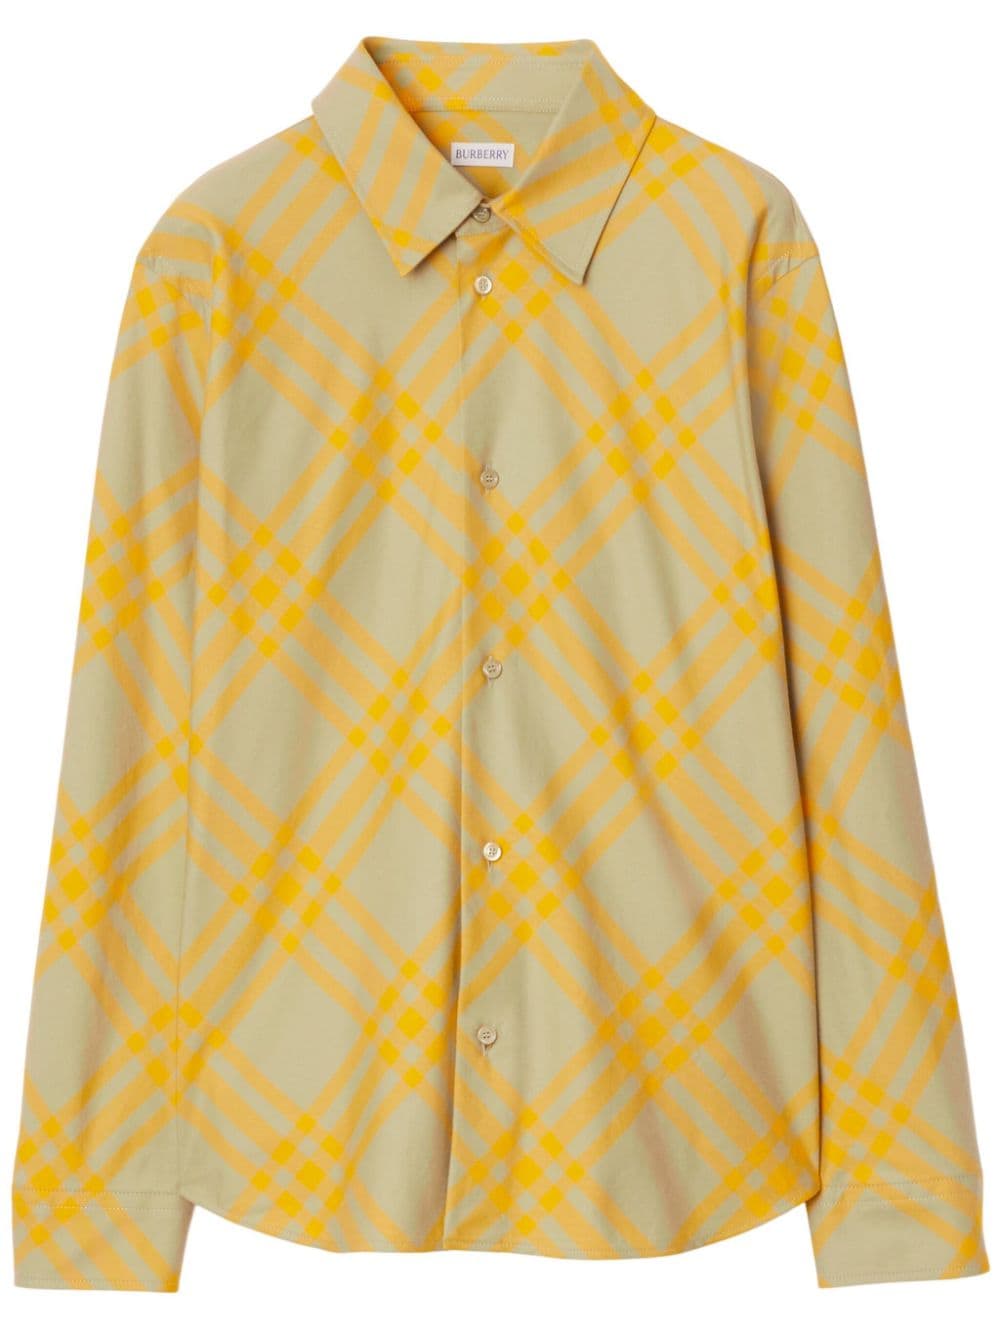 Burberry checked flannel shirt - Neutrals von Burberry